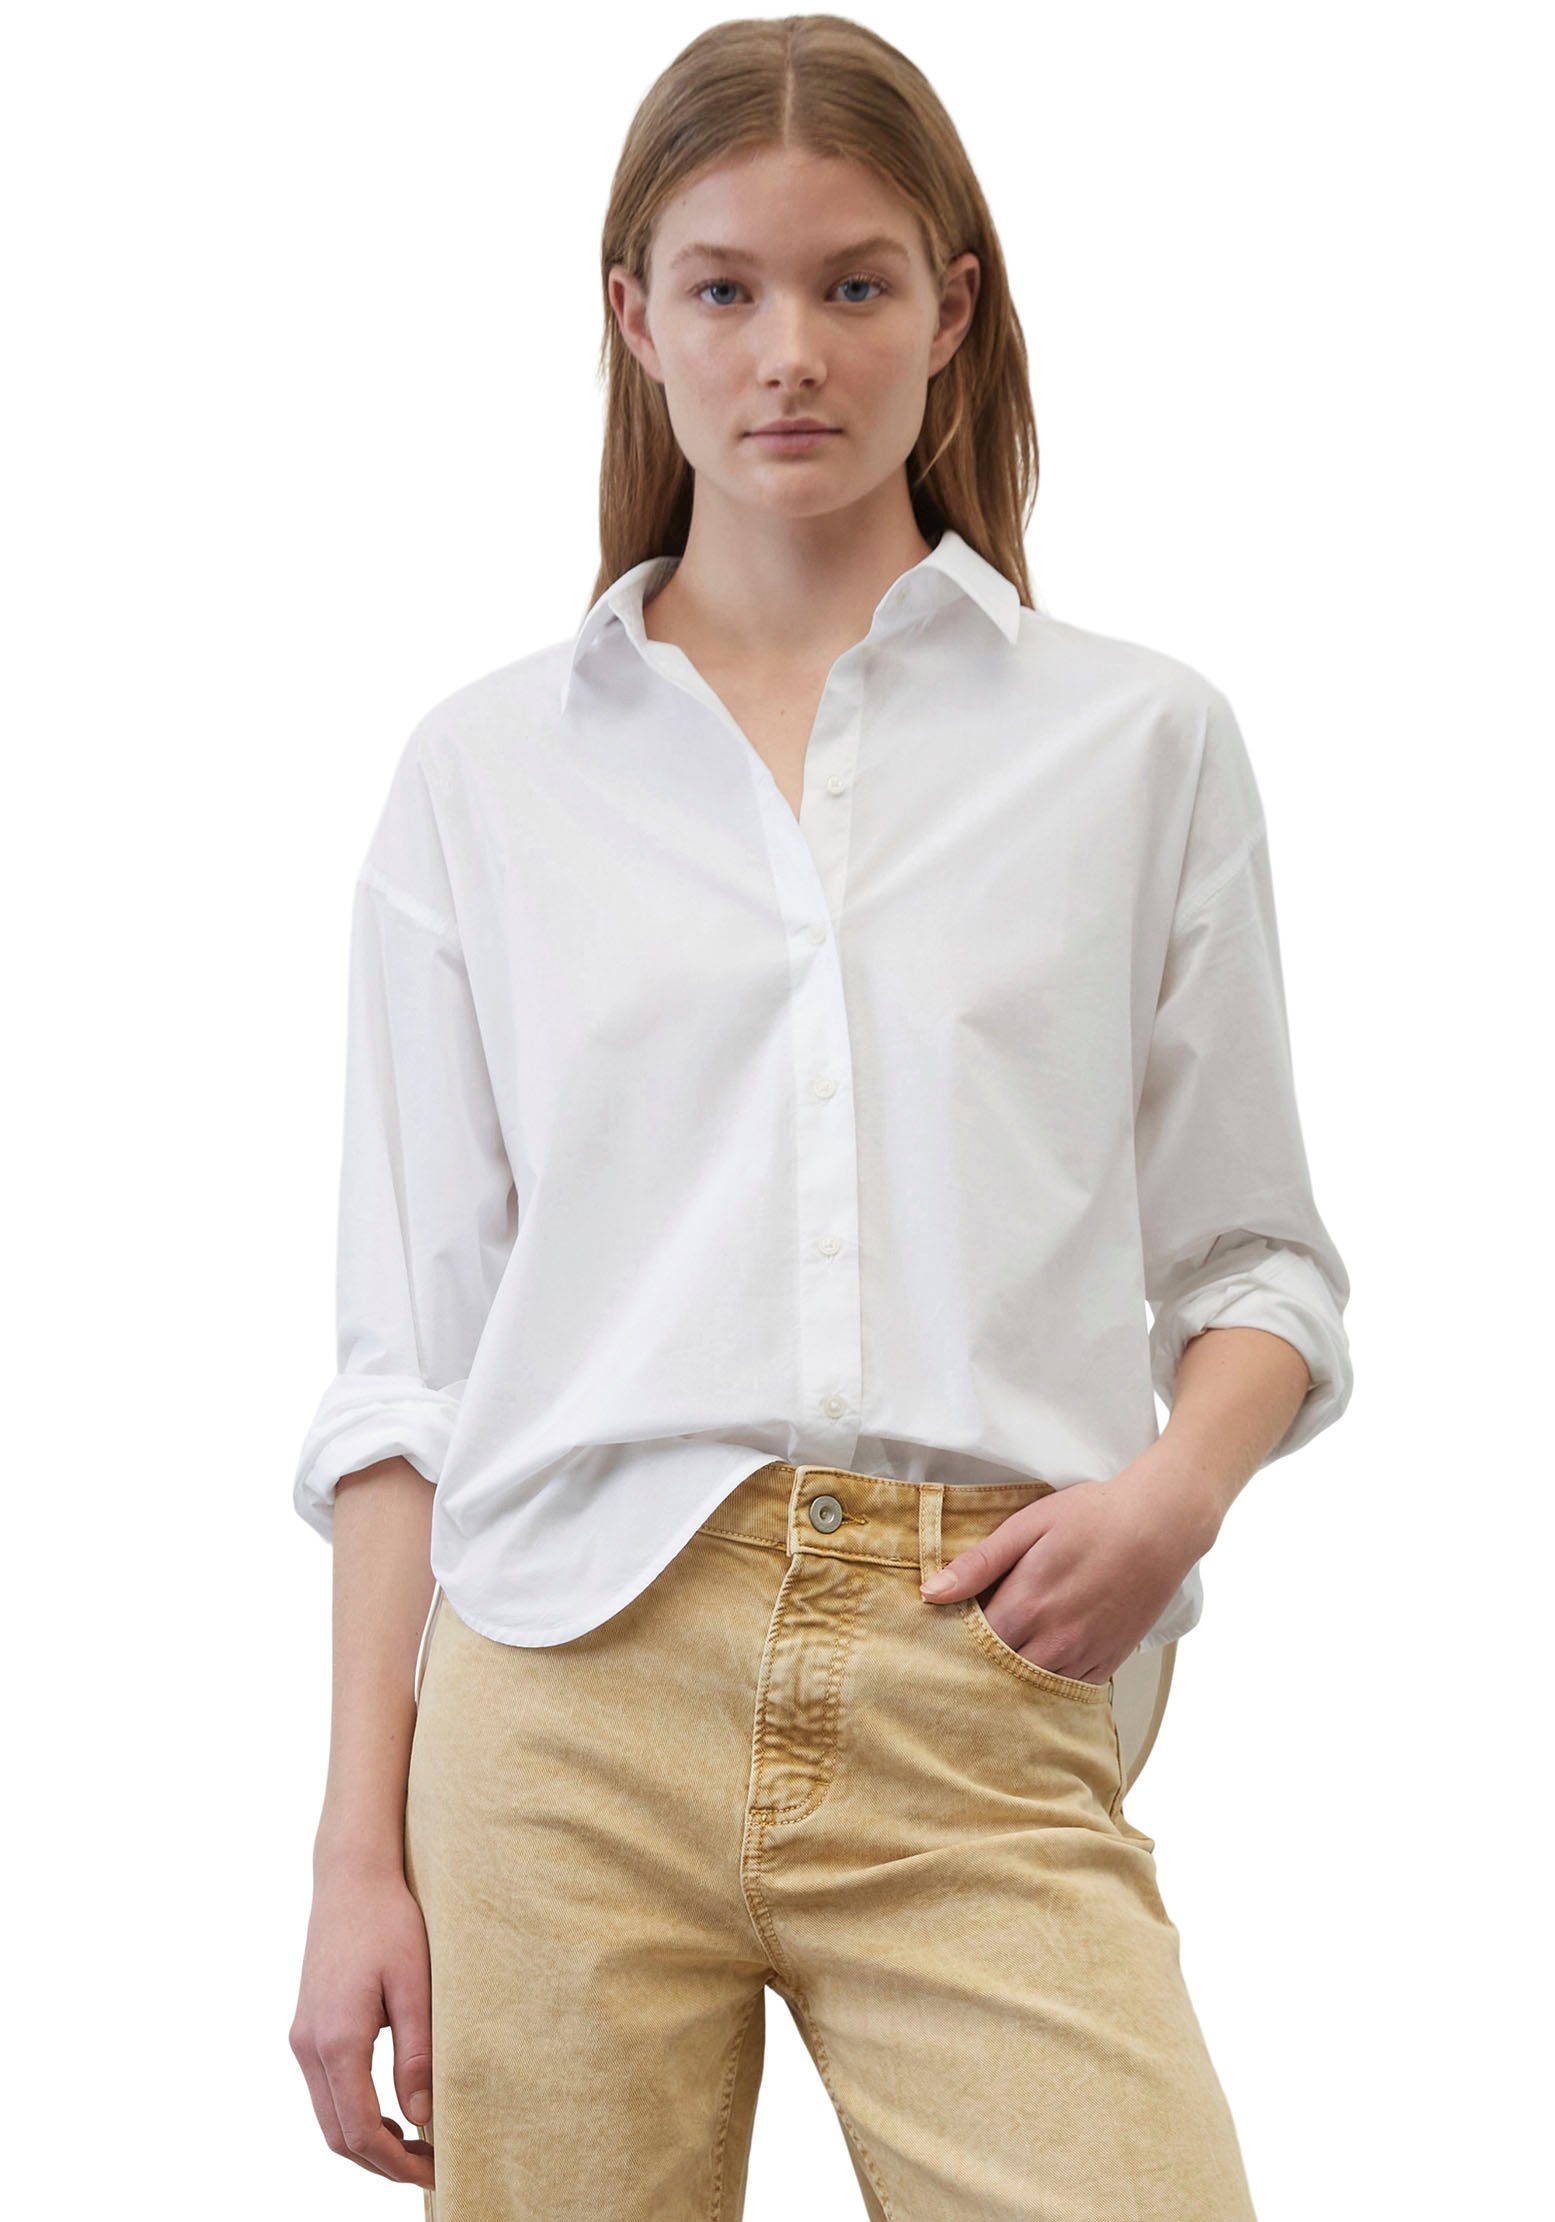 Marc O'Polo Blusen für Damen online kaufen | OTTO